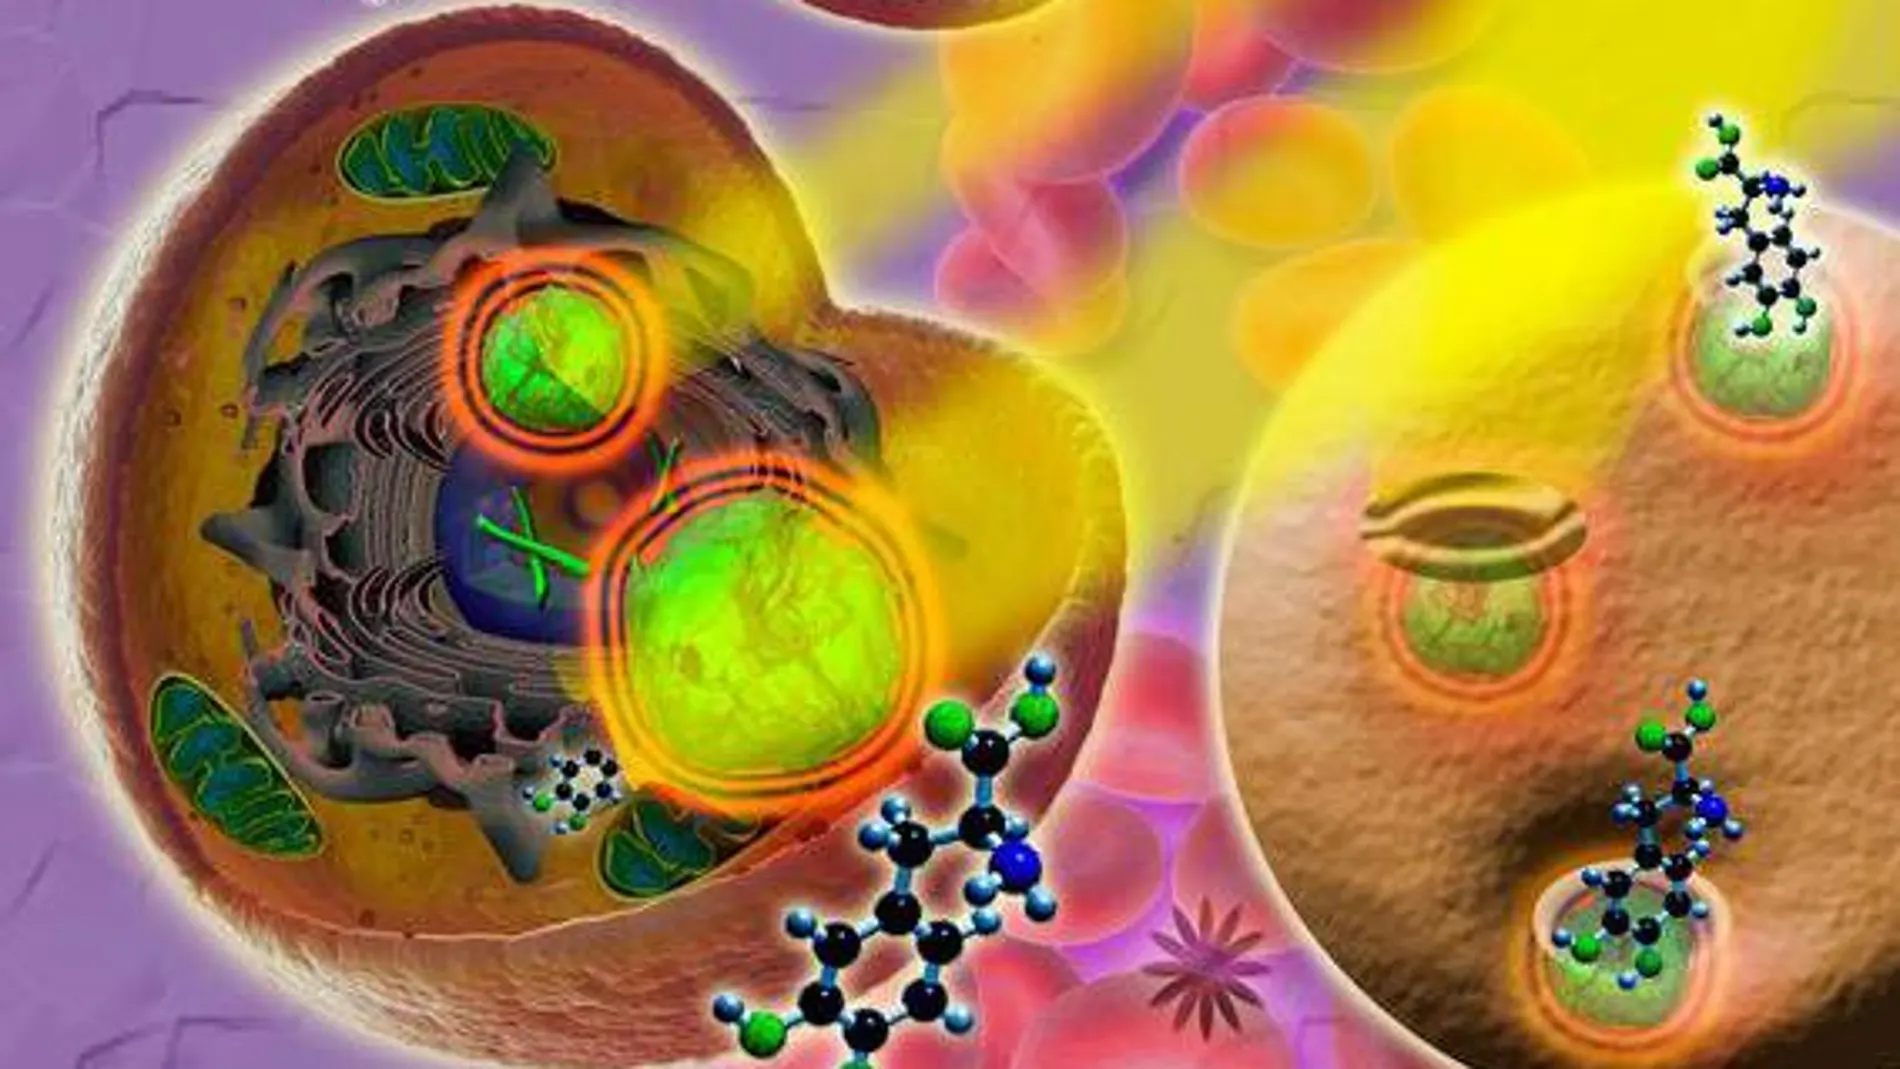 Nanopartículas responden liberando fármacos al ser irradiadas con luz láser en el infrarrojo cercano